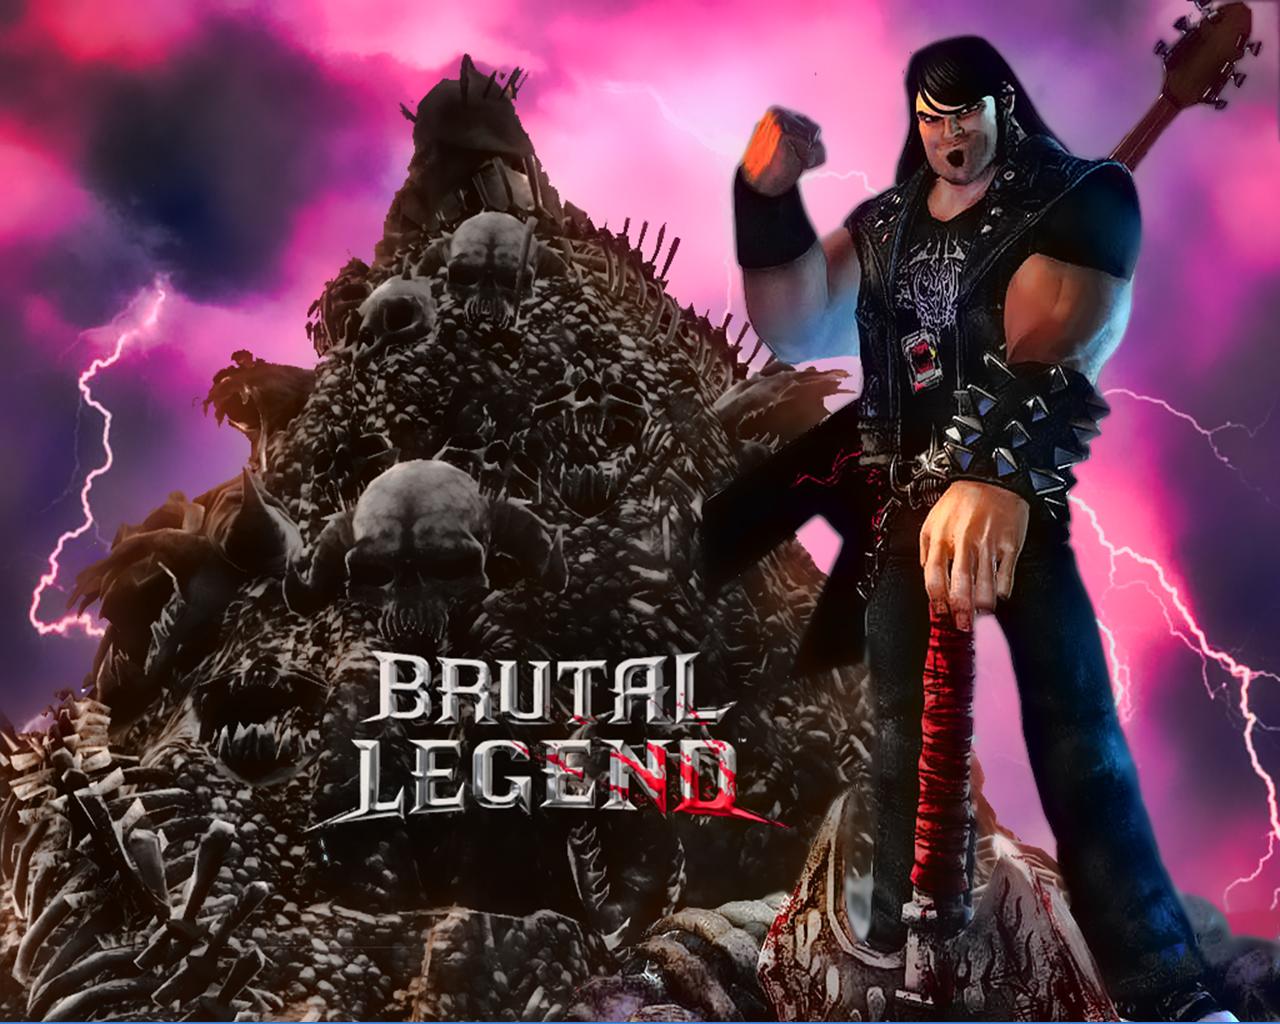 Brutal legend steam